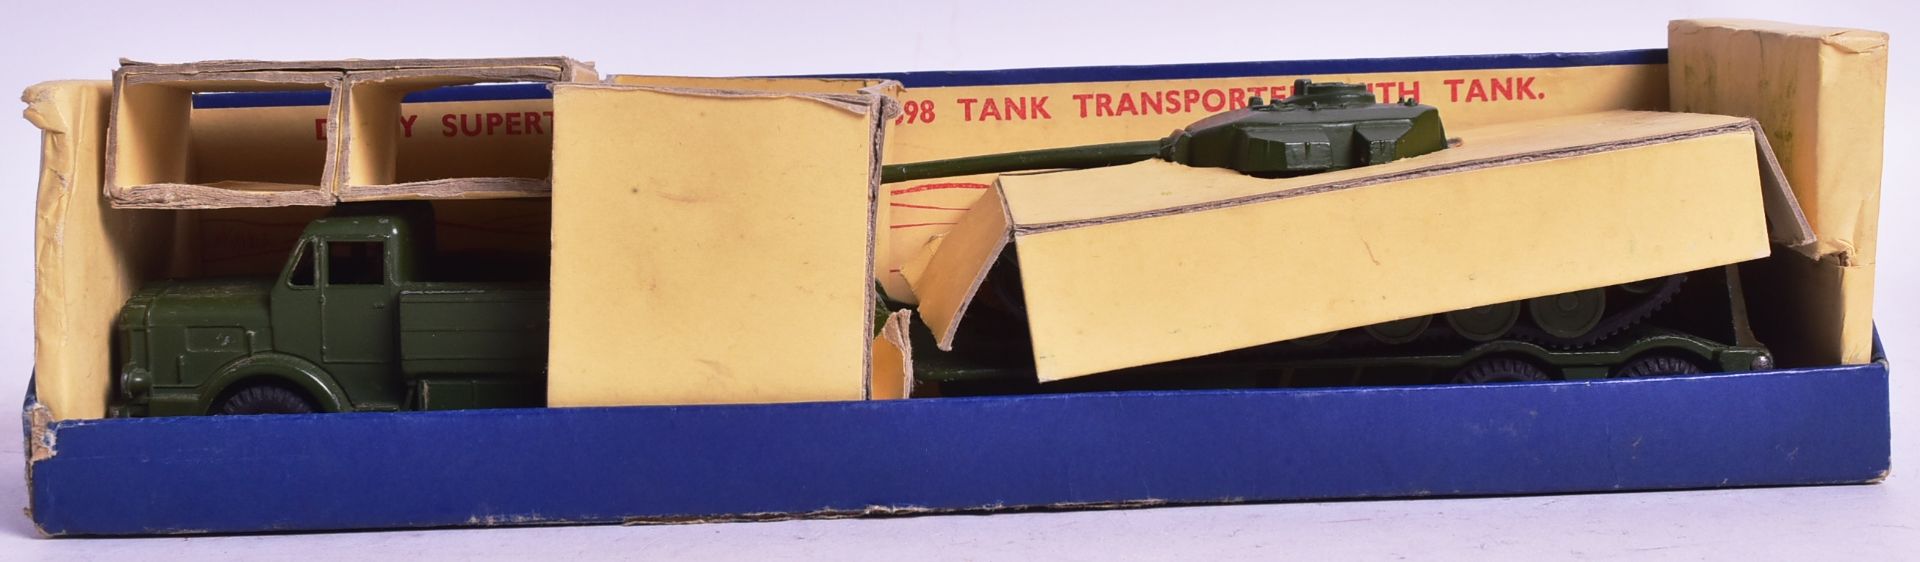 DIECAST - VINTAGE DINKY SUPER TOYS TANK TRANSPORTER GIFT SET - Image 6 of 6